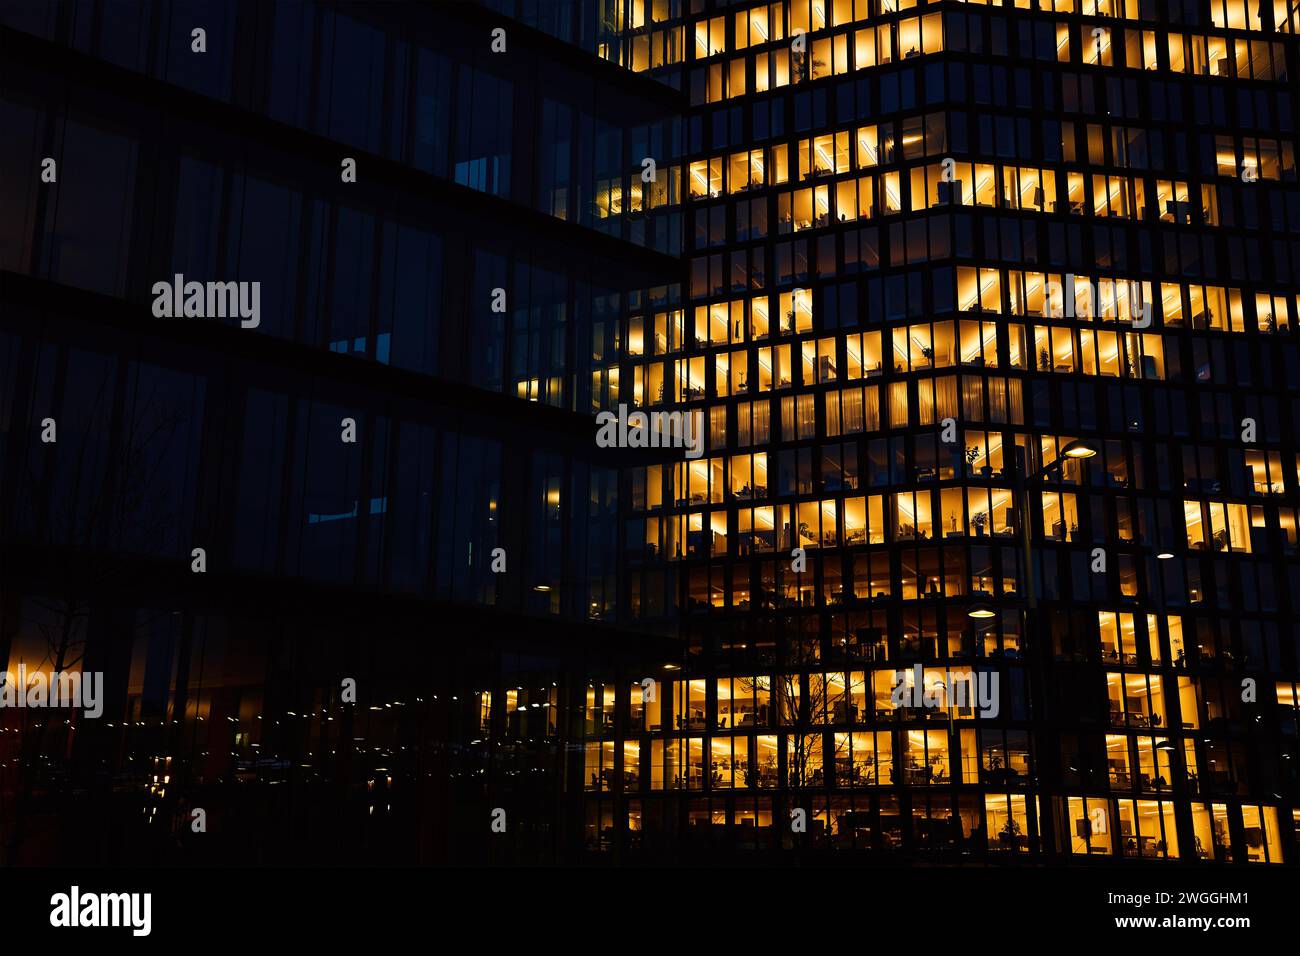 Extérieur de l'immeuble de bureaux avec lumières incandescentes dans les fenêtres dans la ville de nuit. Quartier du centre-ville de Vienne avec façades gratte-ciel. Panorama nocturne de la ville. Wor Banque D'Images